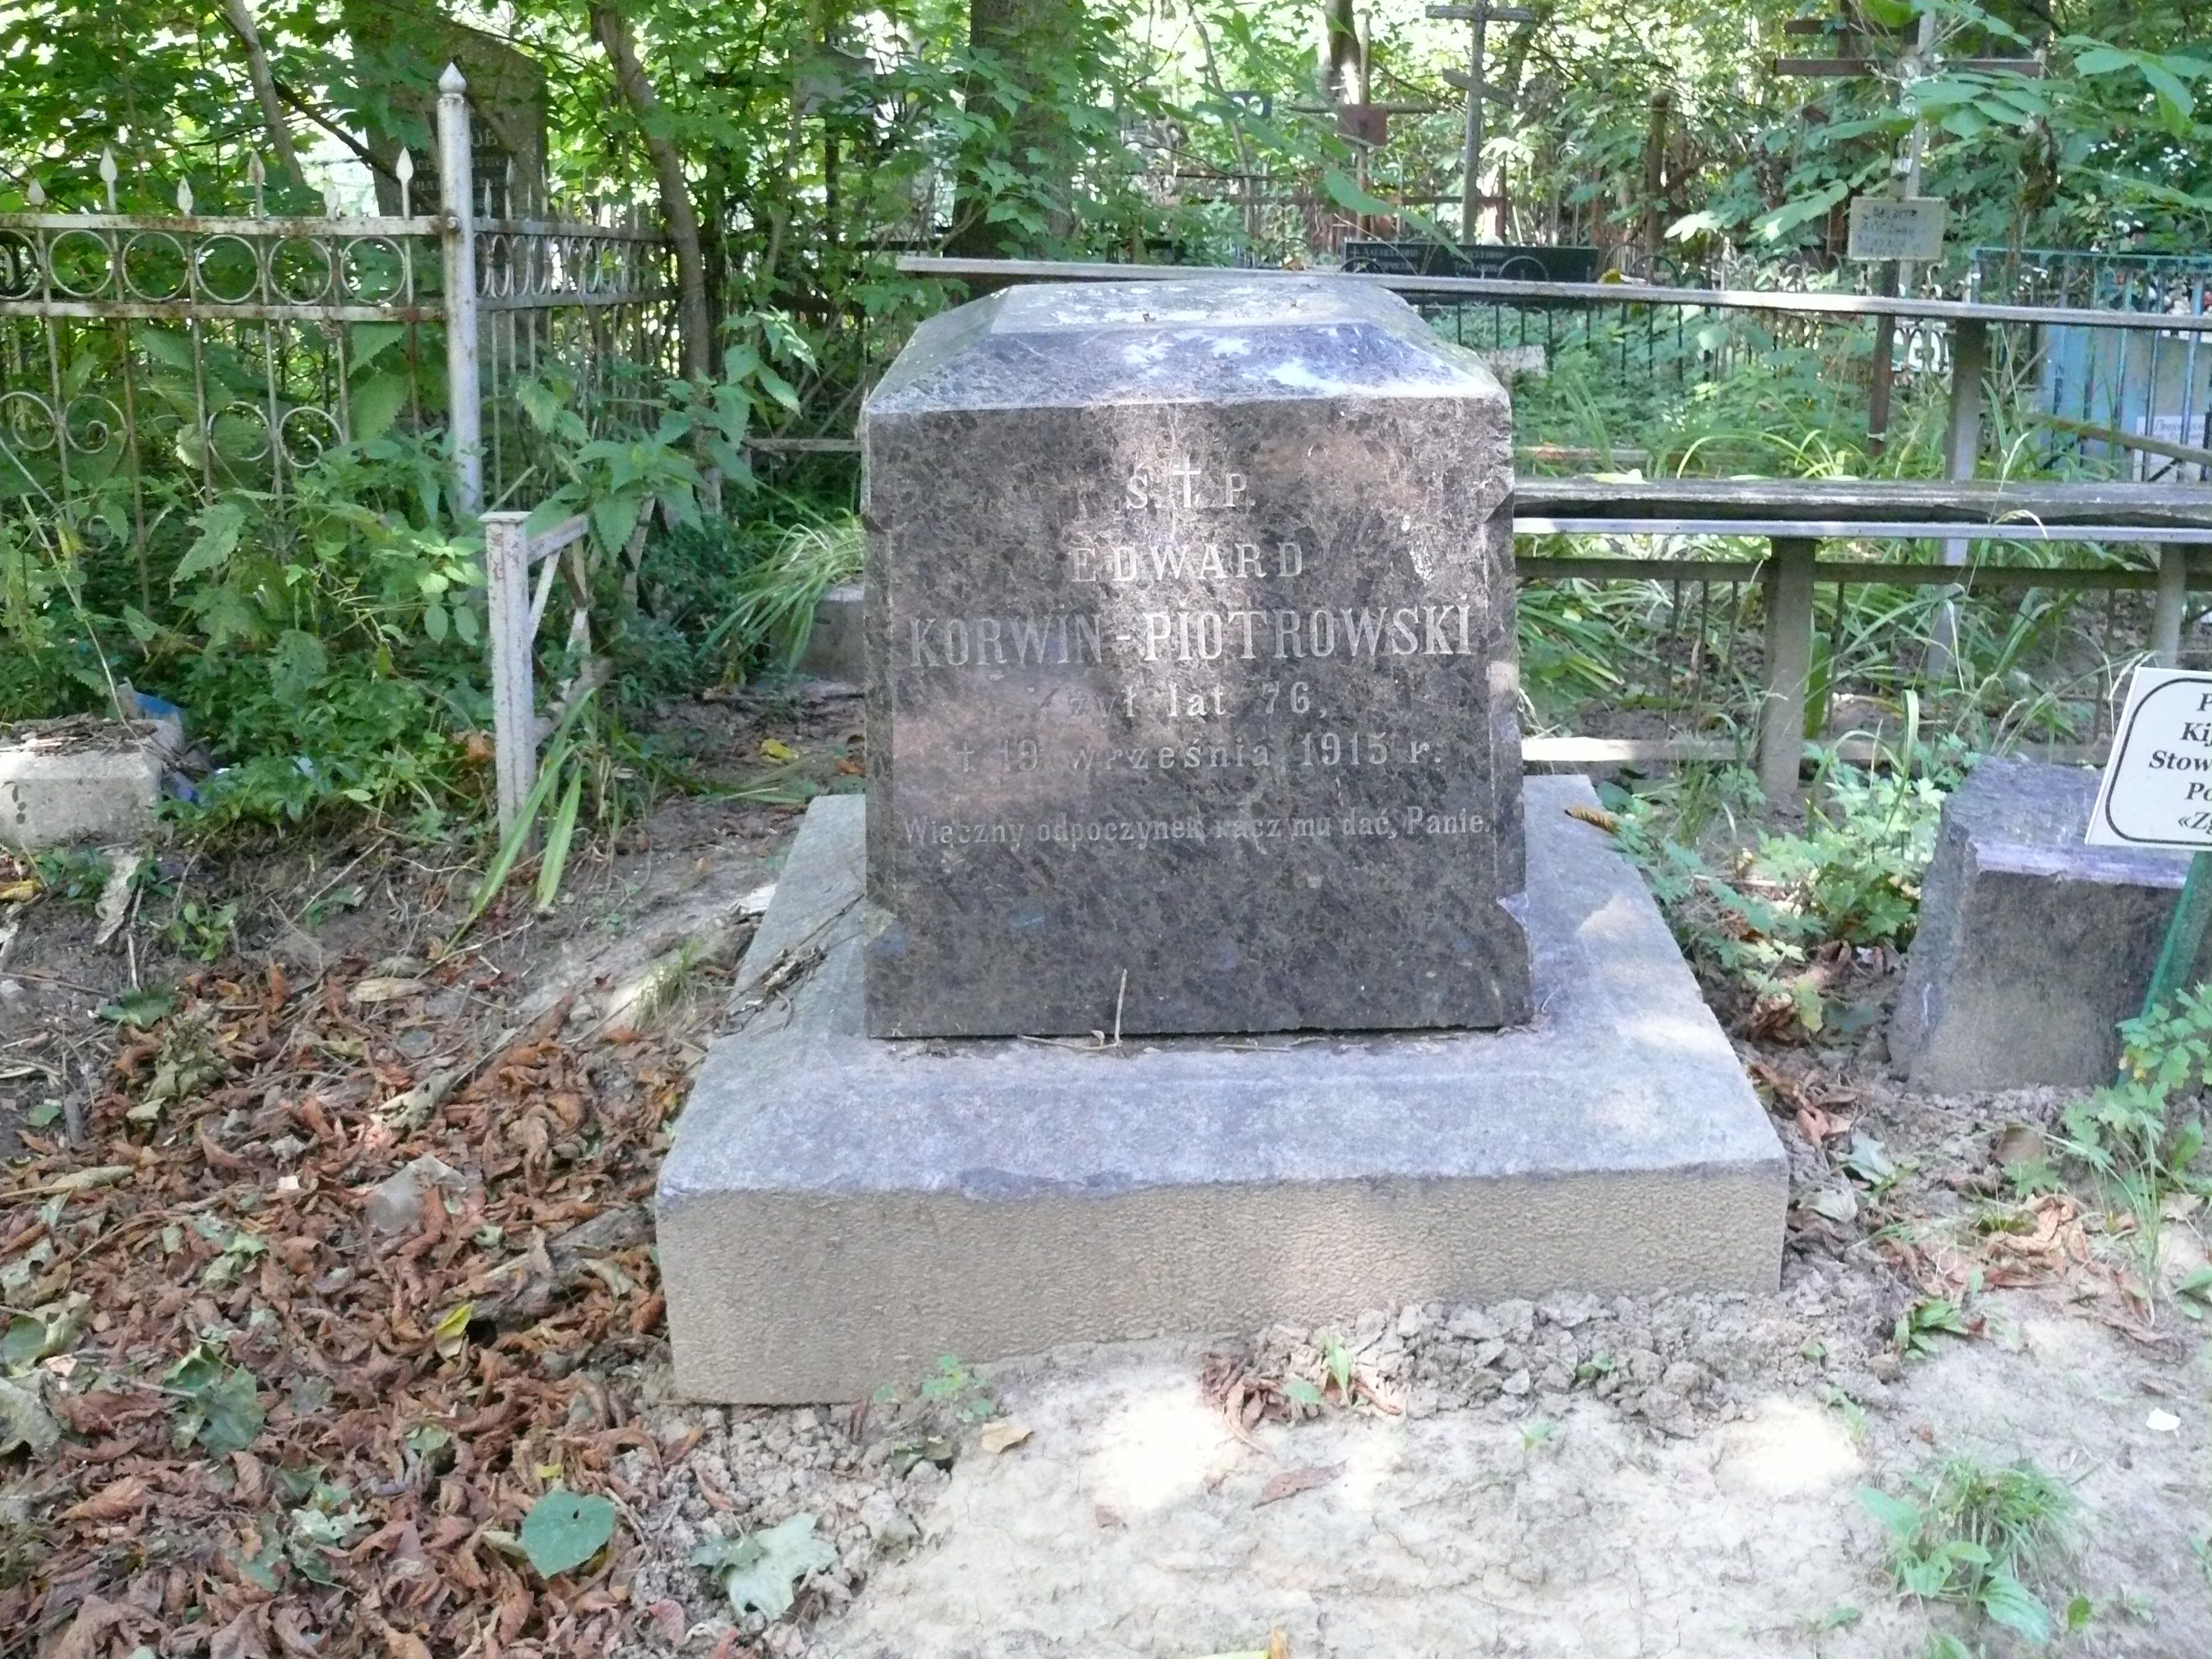 Tombstone of Edward Korwin-Piotrowski